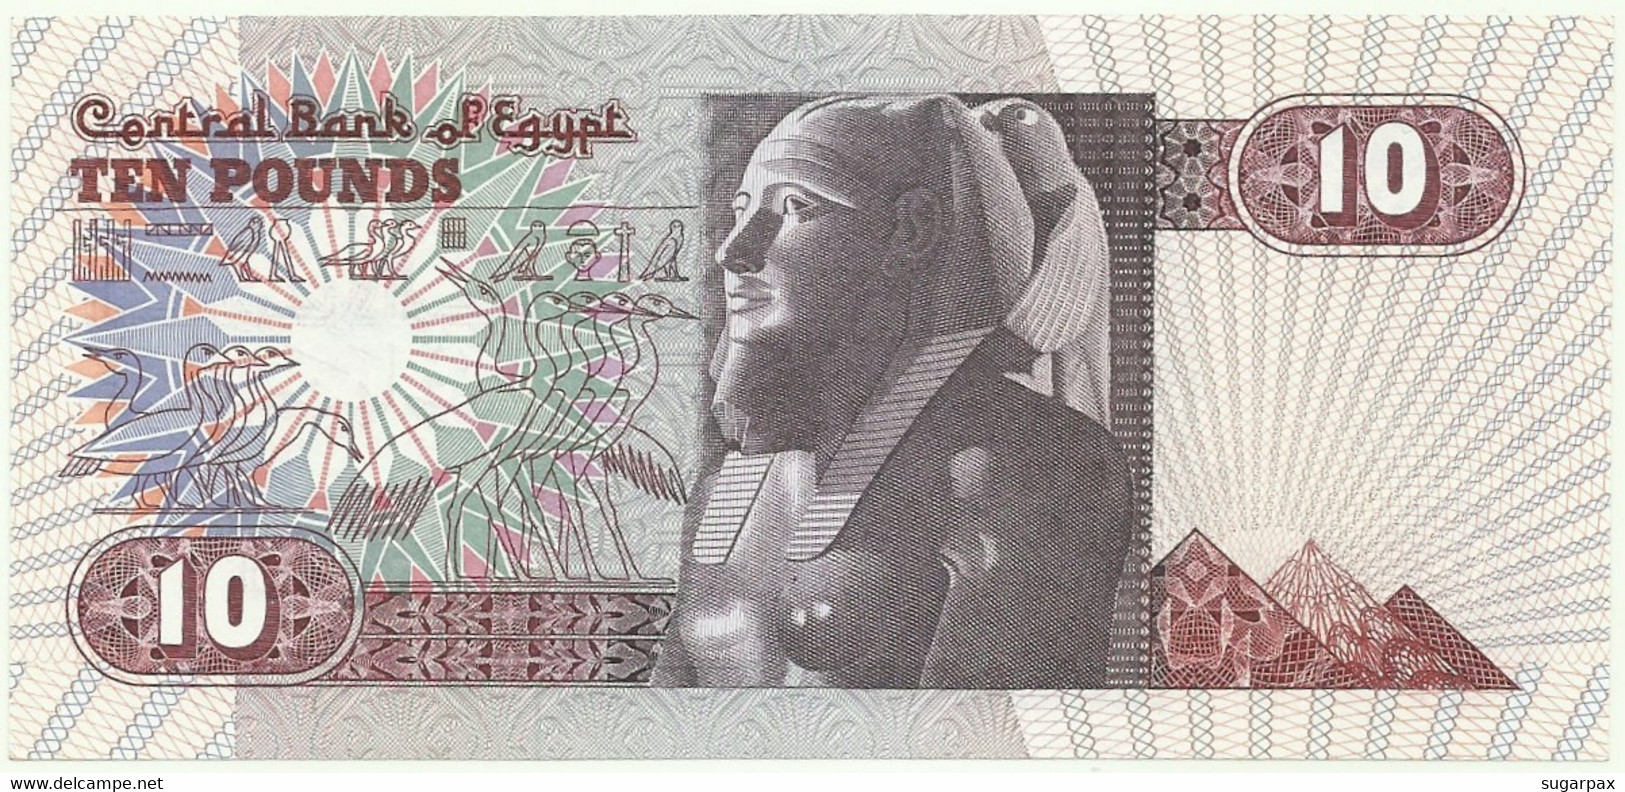 Egypt - 10 Pounds - (19)85/04/20 - Pick 51.c - Unc. - Sign 17 - Serie 101 - 1985 - Egitto